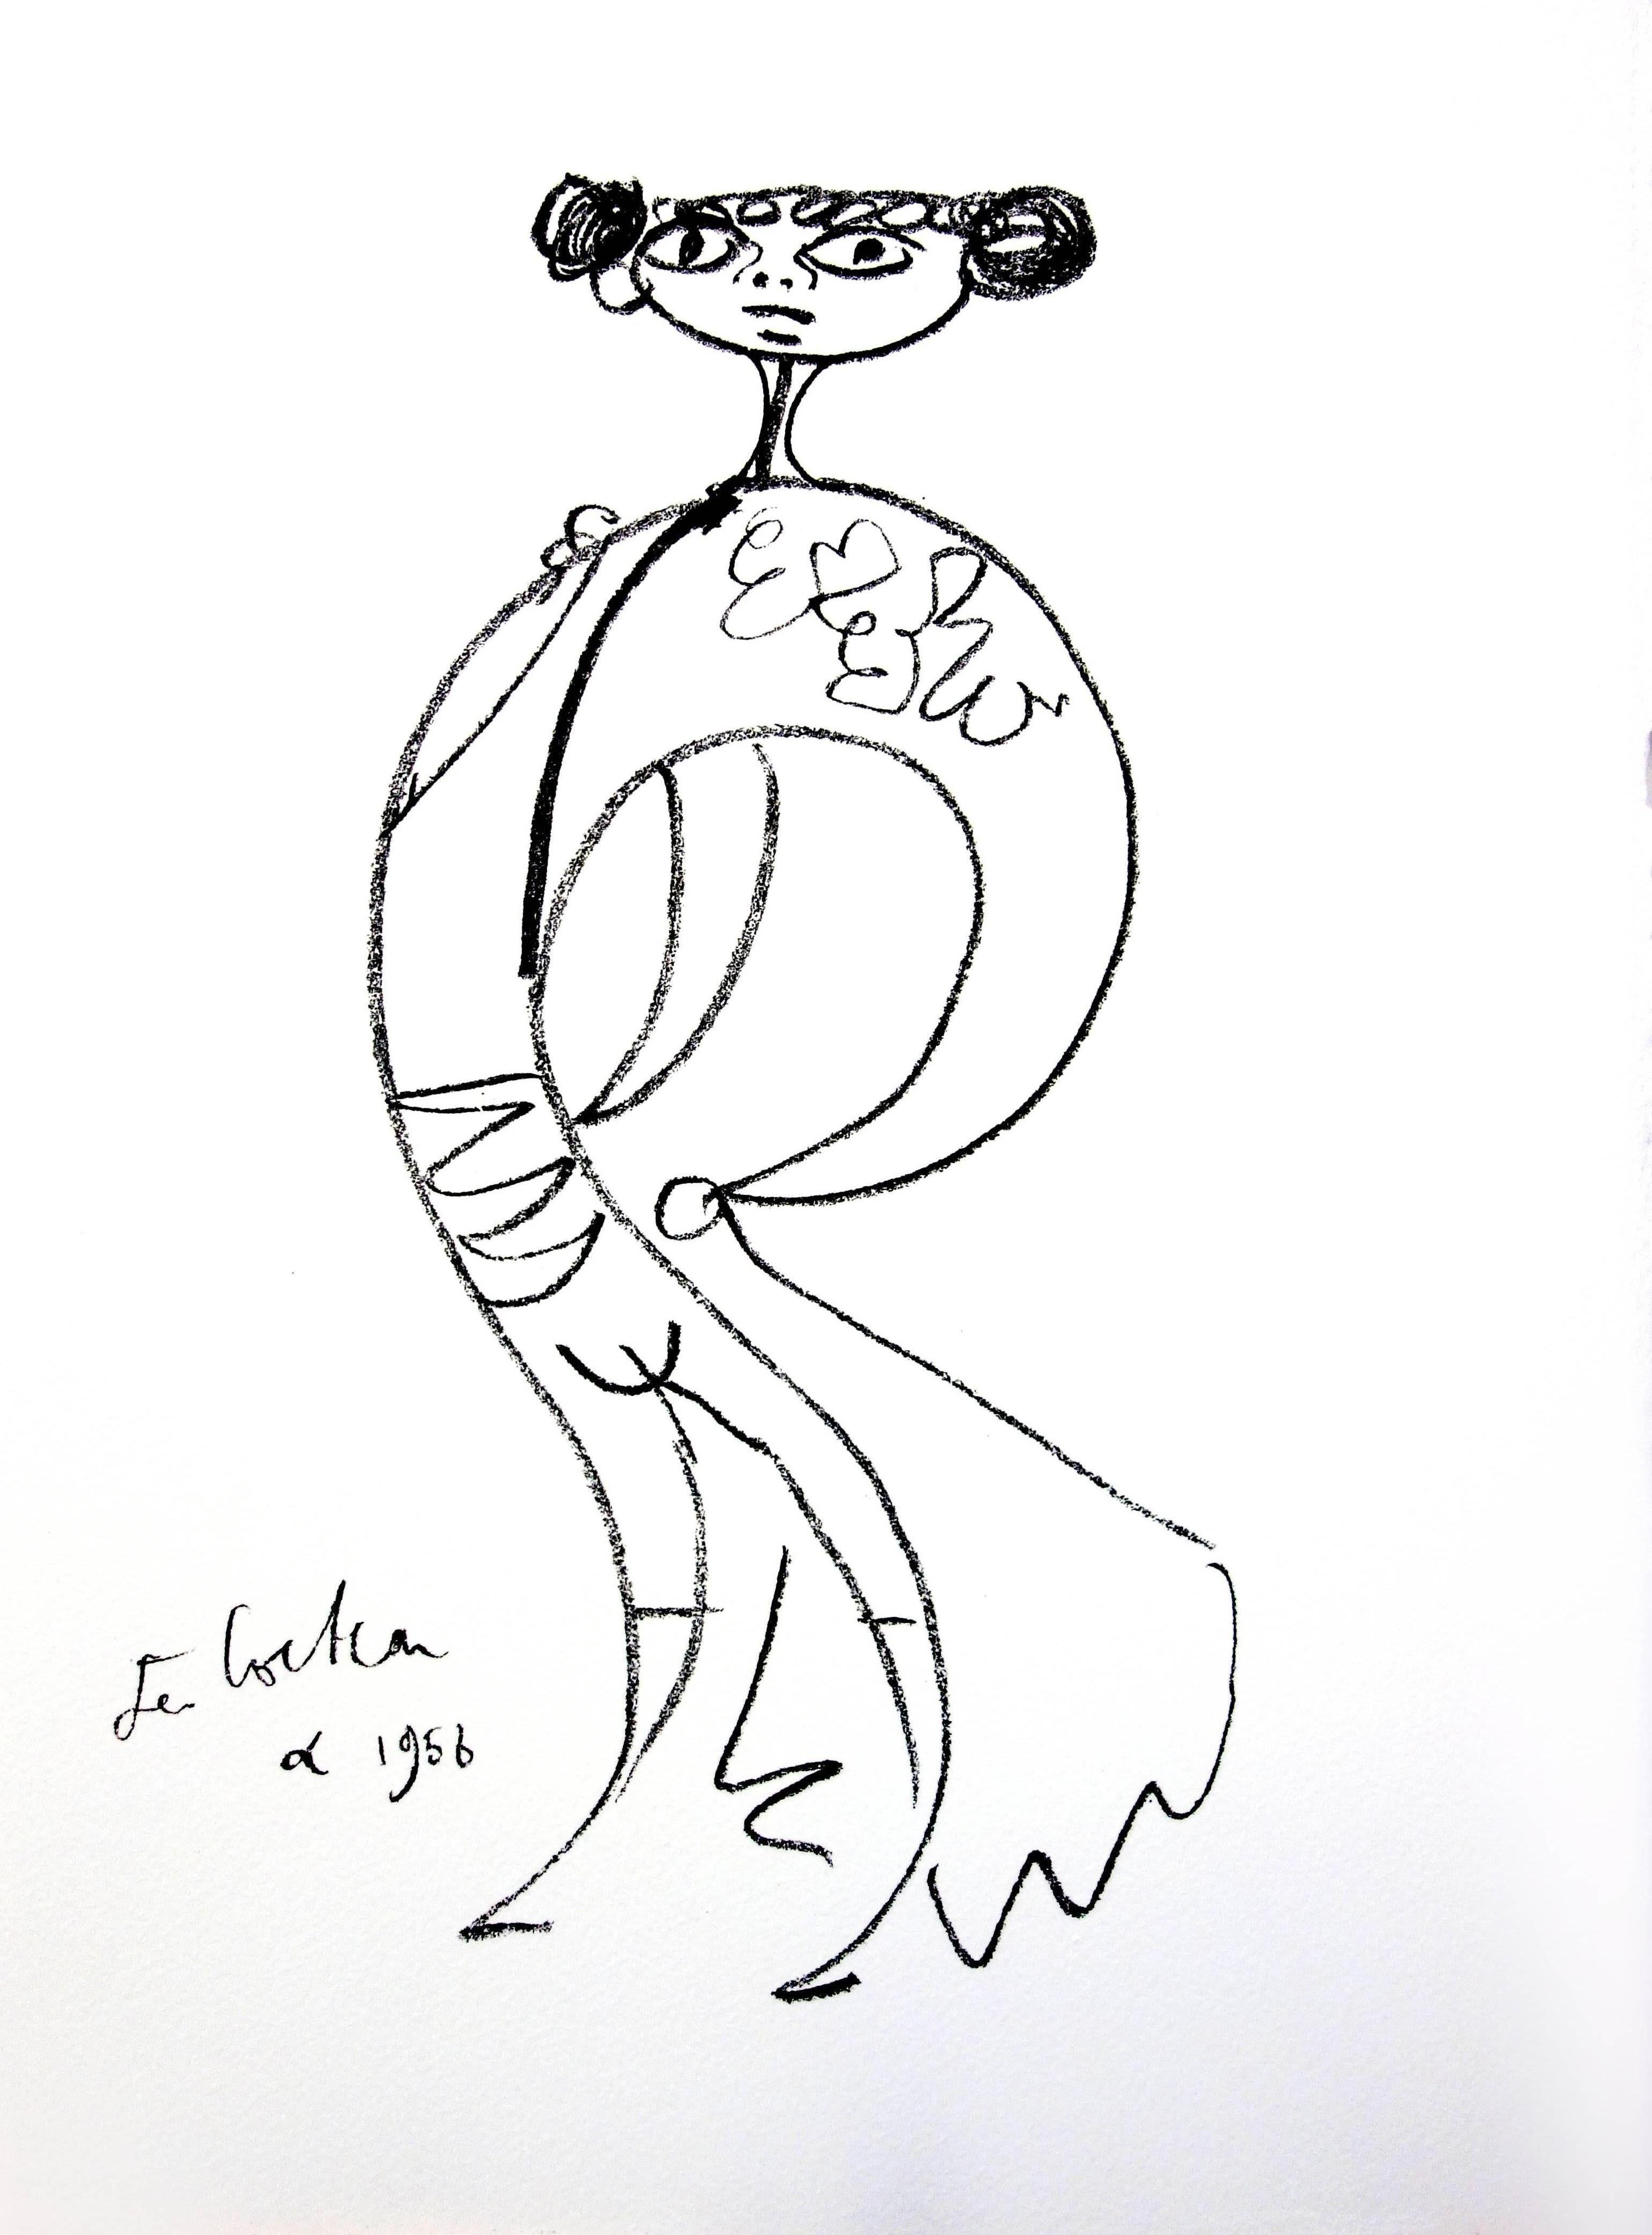 Original-Lithographie von Jean Cocteau
Titel: Taureaux
In der Platte signiert
Abmessungen: 40 x 30 cm
Auflage: 200
Luxuriöse Printausgabe aus dem Portfolio von Trinckvel
1965
Aus der letzten Mappe, an der Cocteau arbeitete und die kurz vor seinem